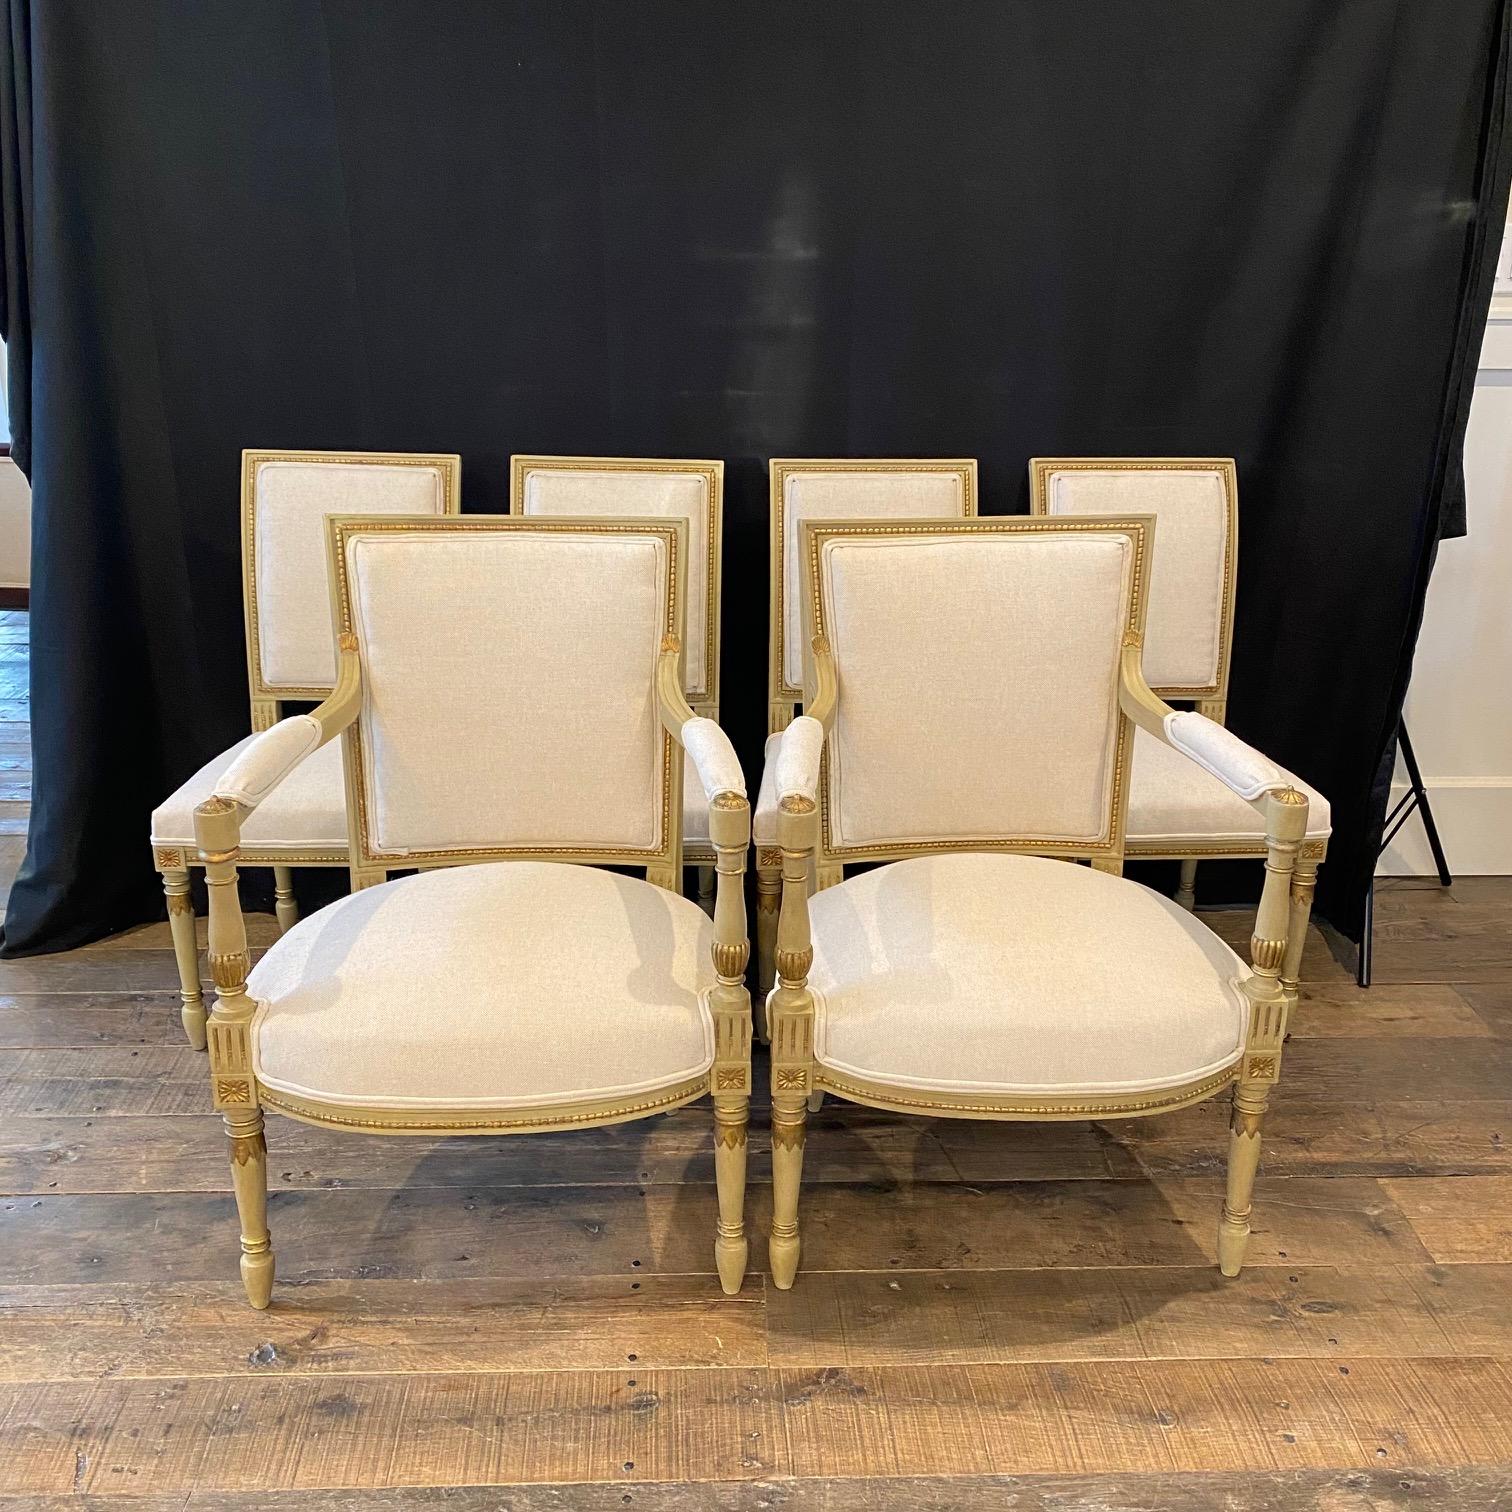 Ces chaises françaises de style Louis XVI ont une silhouette élégante et un cadre en bois sculpté, nouvellement tapissées dans un tissu neutre de haute qualité en coton/lin britannique. Les chaises ont un dossier carré et une assise sculptée avec